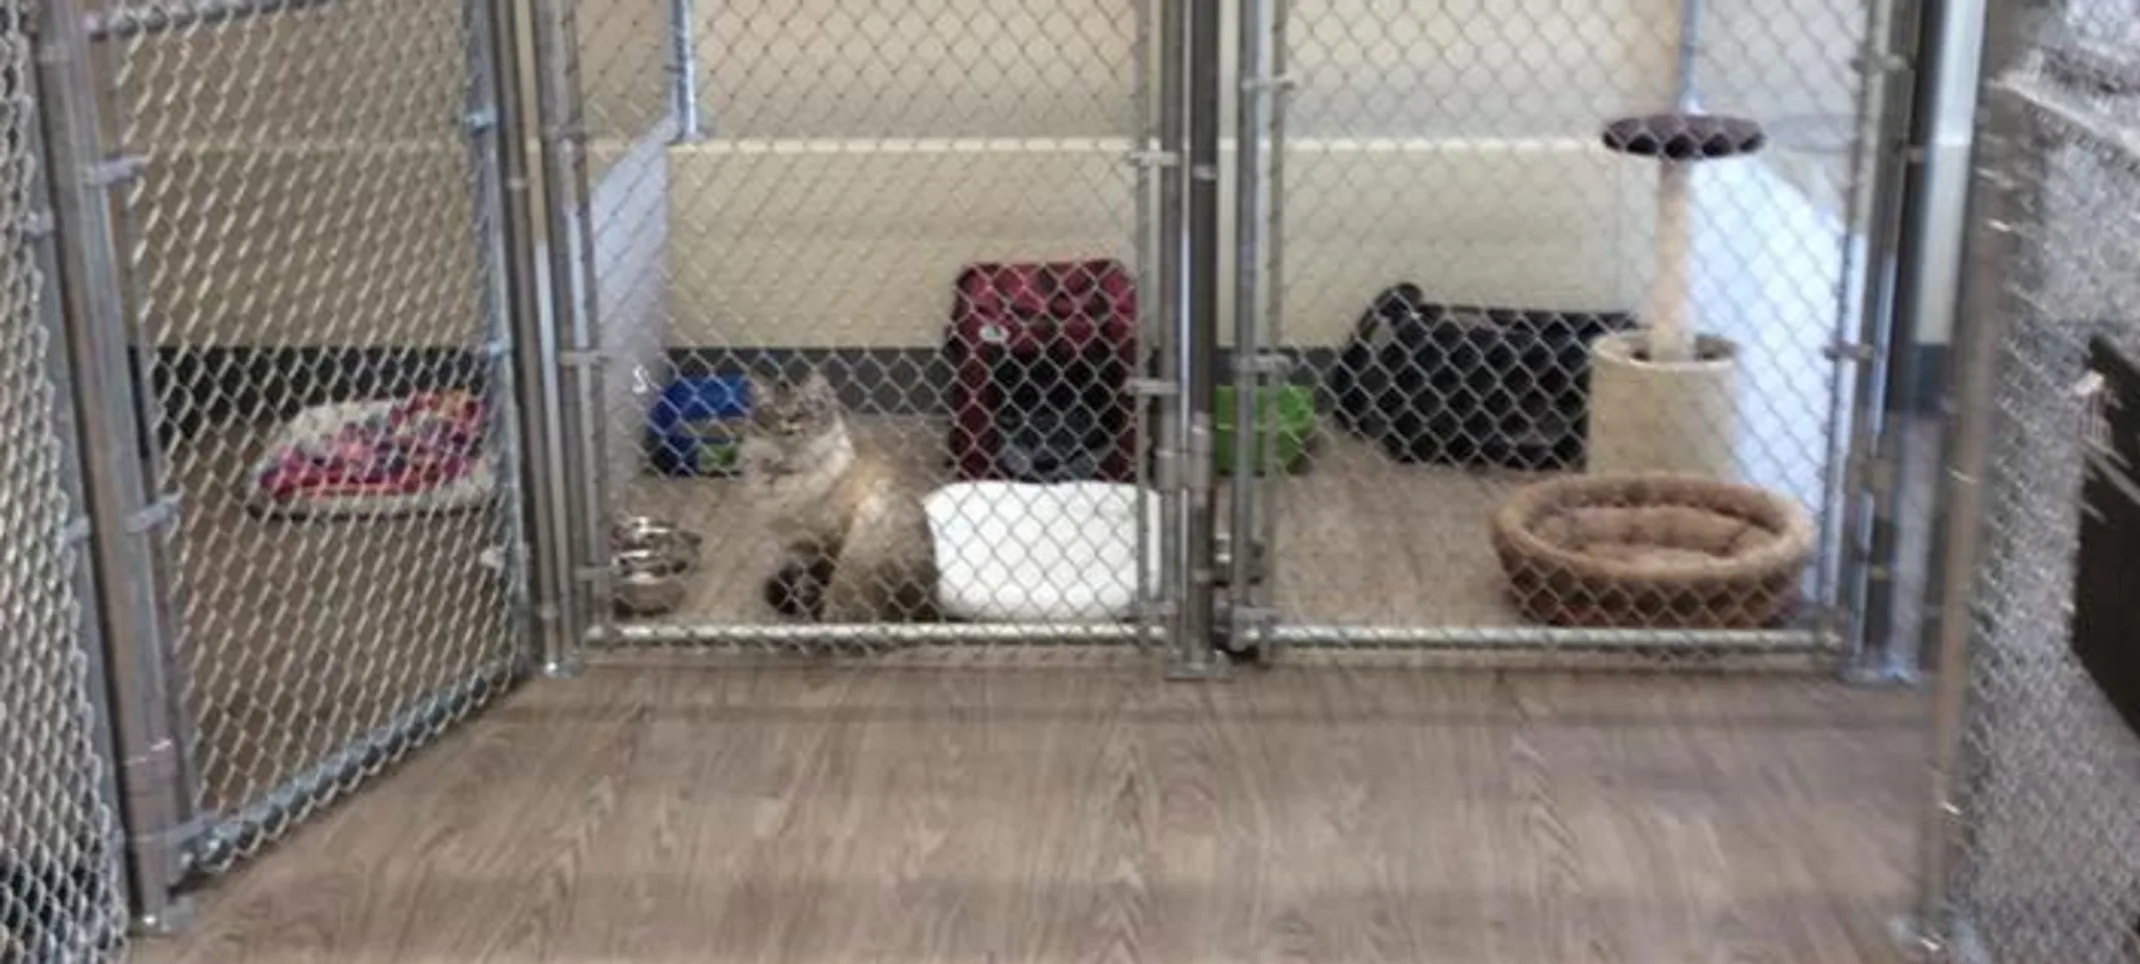 Cat boarding kennels at Rose Valley Veterinary Hospital